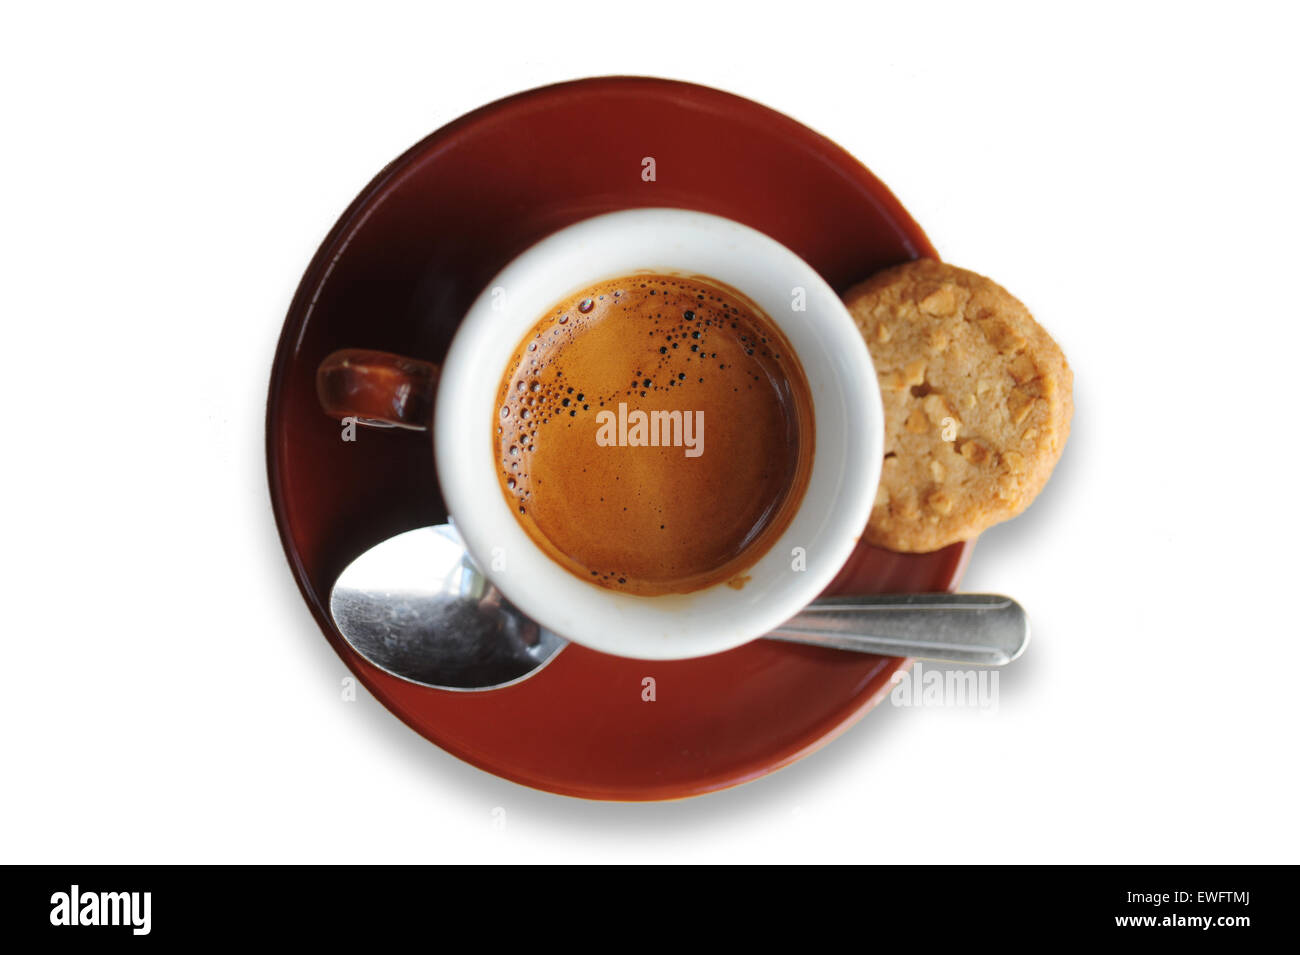 Lebensmittel, Kaffee Cafe Espresso Getränke serviert in einer Demitasse Keramik Tasse auf weiß ausgeschnitten Stockfoto